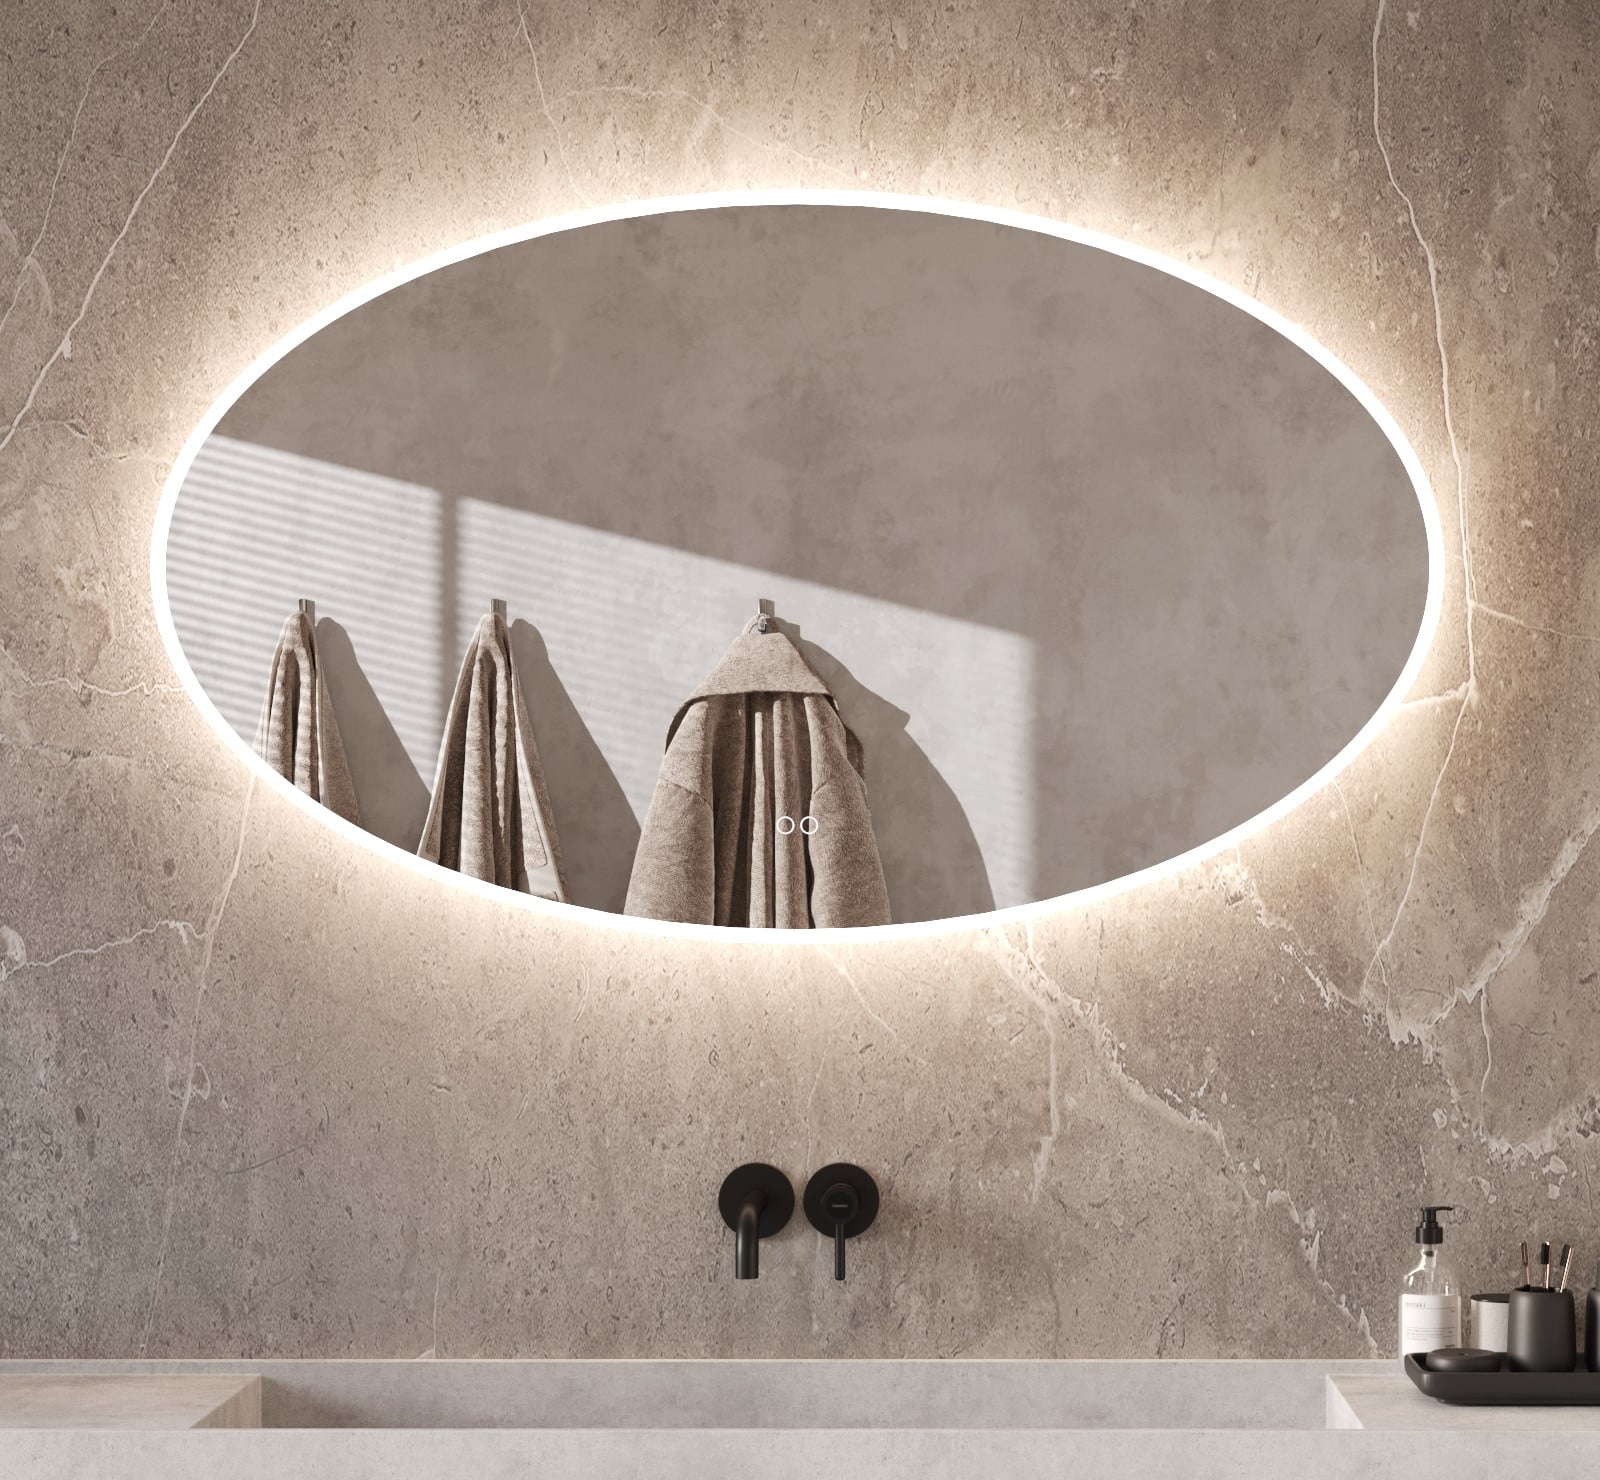 Fraaie ovalen badkamerspiegel met verlichting, spiegelverwarming en handige dubbele touch schakelaar met dimfunctie en kleurenwissel